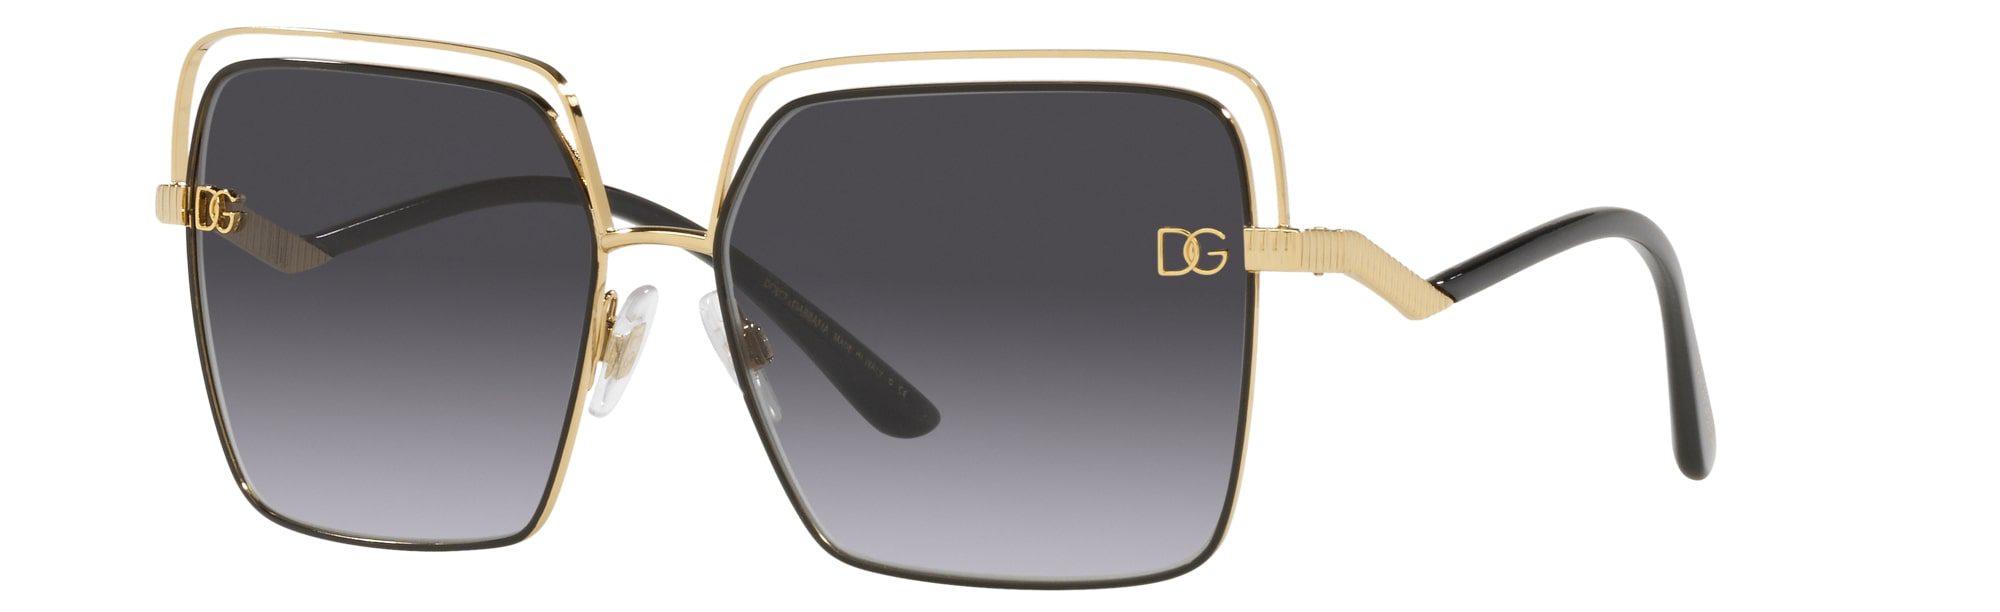 Nuovi_occhiali Dolce_&_Gabbana_Primavera_Estate_2021